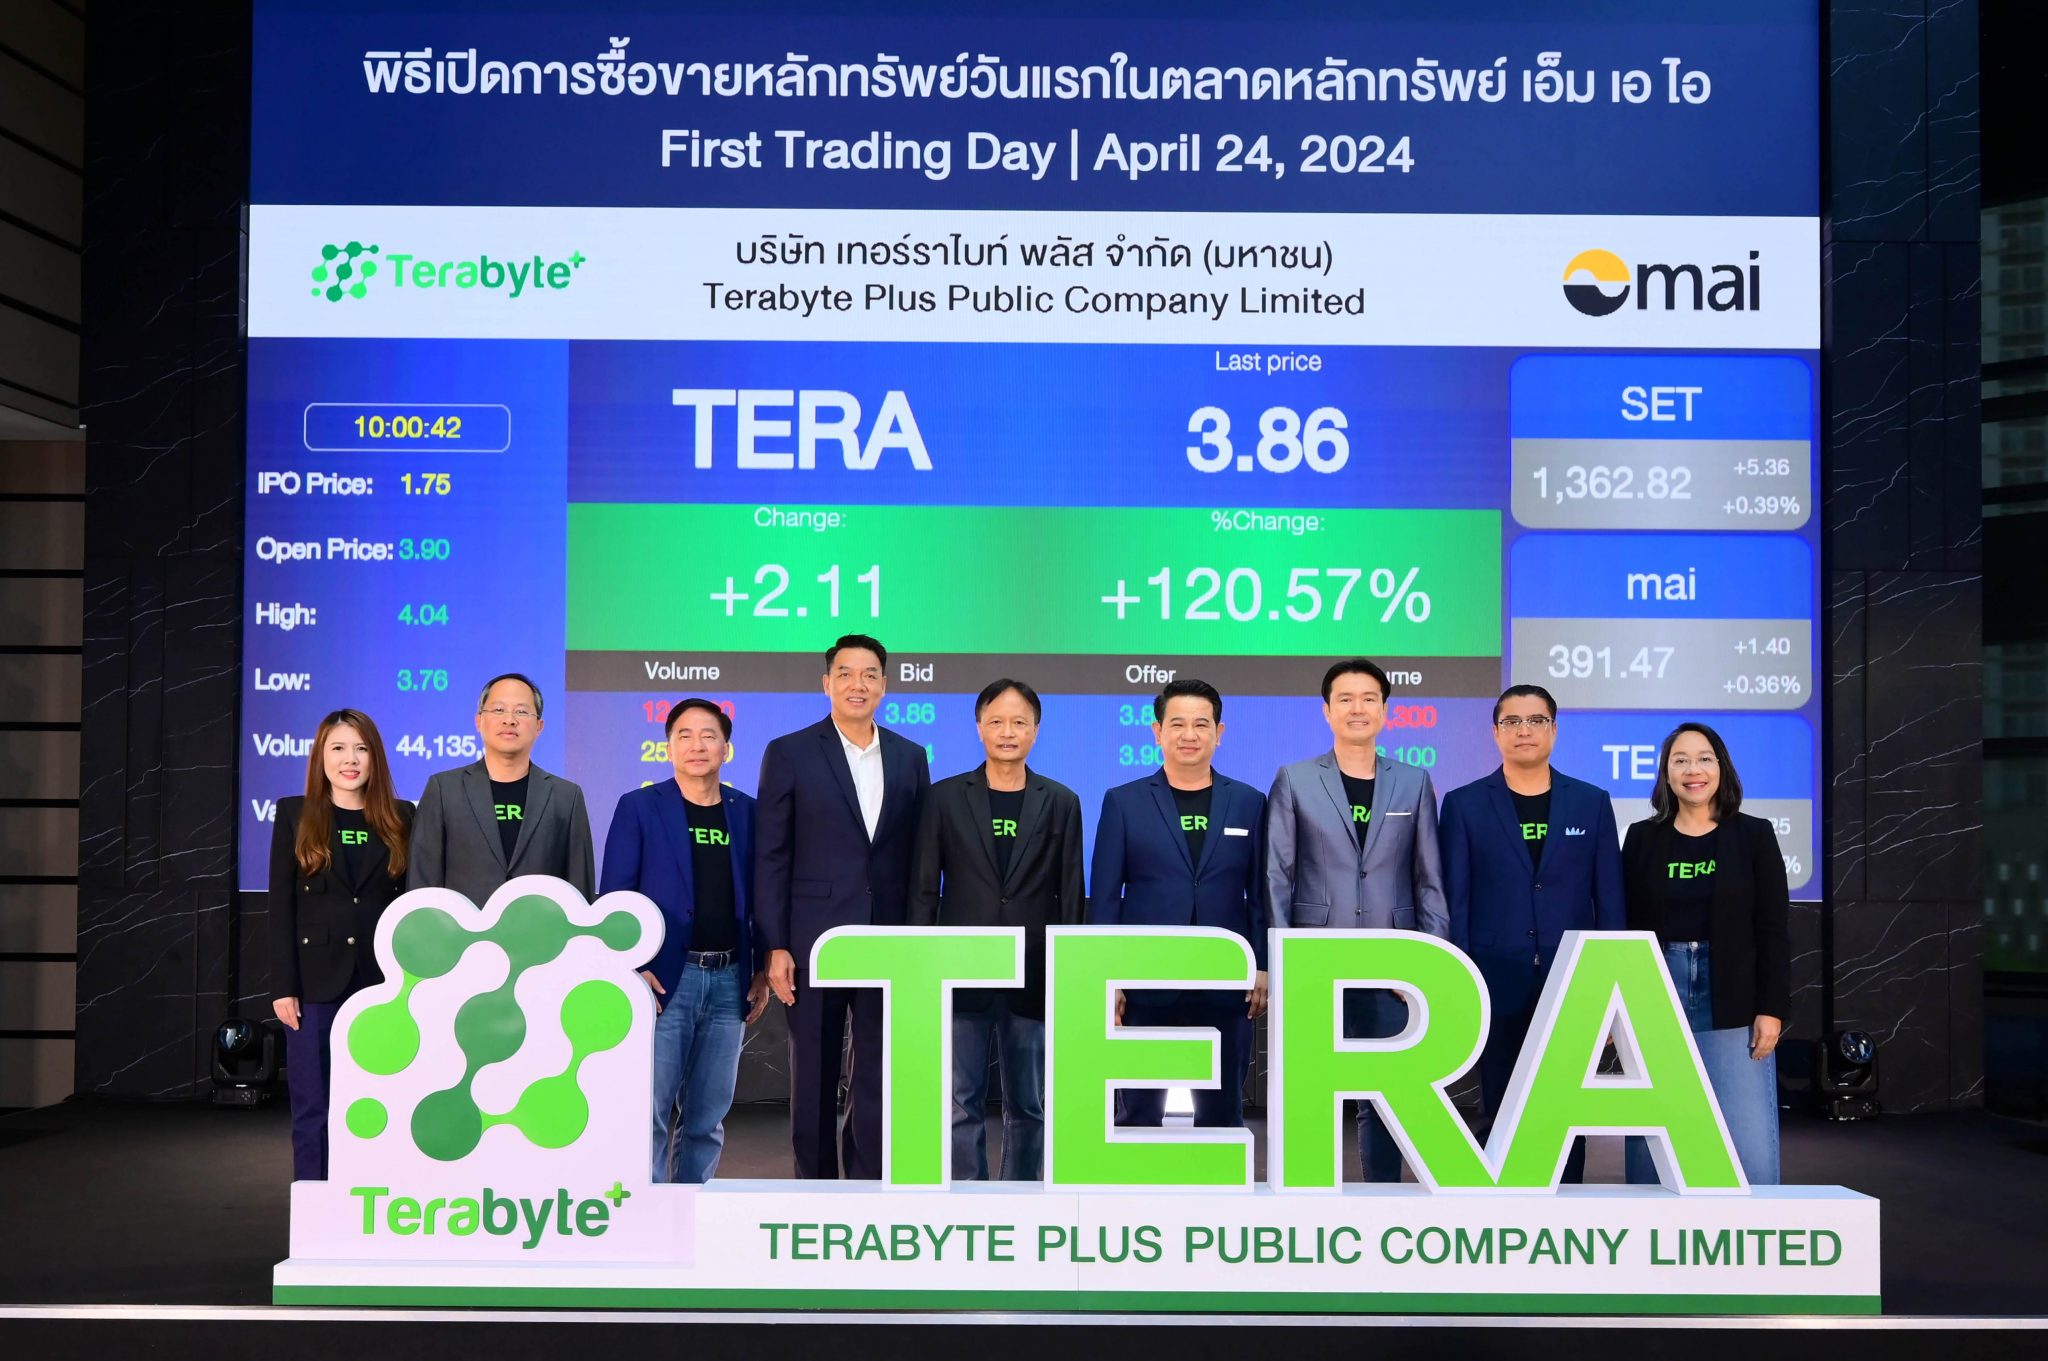 You are currently viewing “TERA” ฟอร์มเจ๋ง! เปิดเทรดวันแรกเหนือจอง 122.86% ลุยให้บริการ T.Cloud รับอนาคตธุรกิจคึกคัก ปักหมุดผลงาน 3 ปี เติบโตเฉลี่ยเกิน 10%